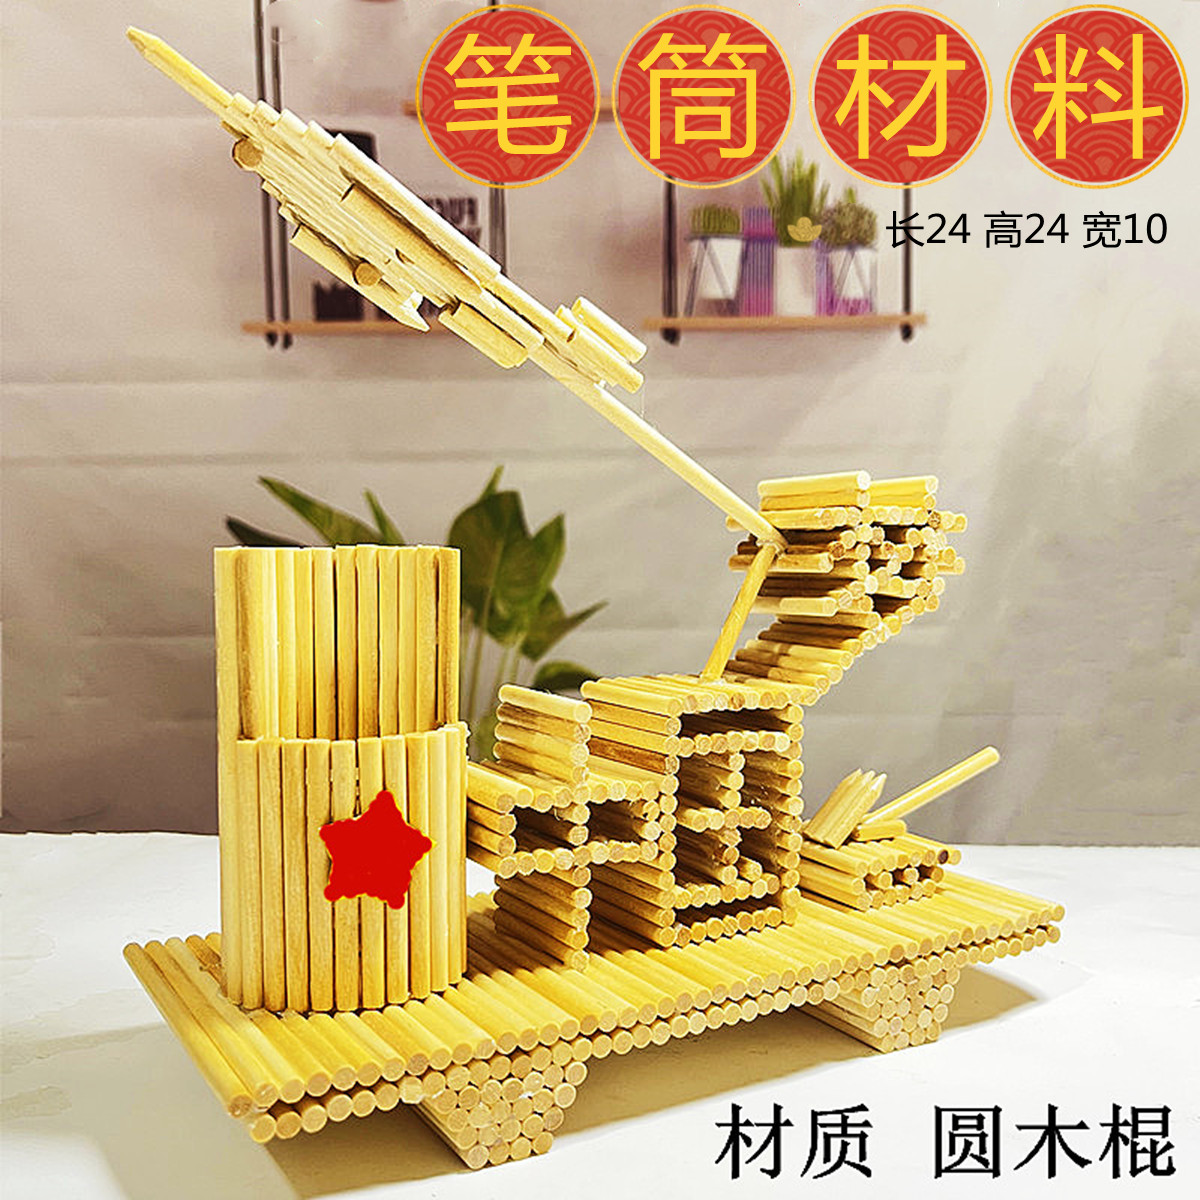 木棒diy木棍手工制作材料模型立体构成坦克笔筒儿童玩具新品包邮